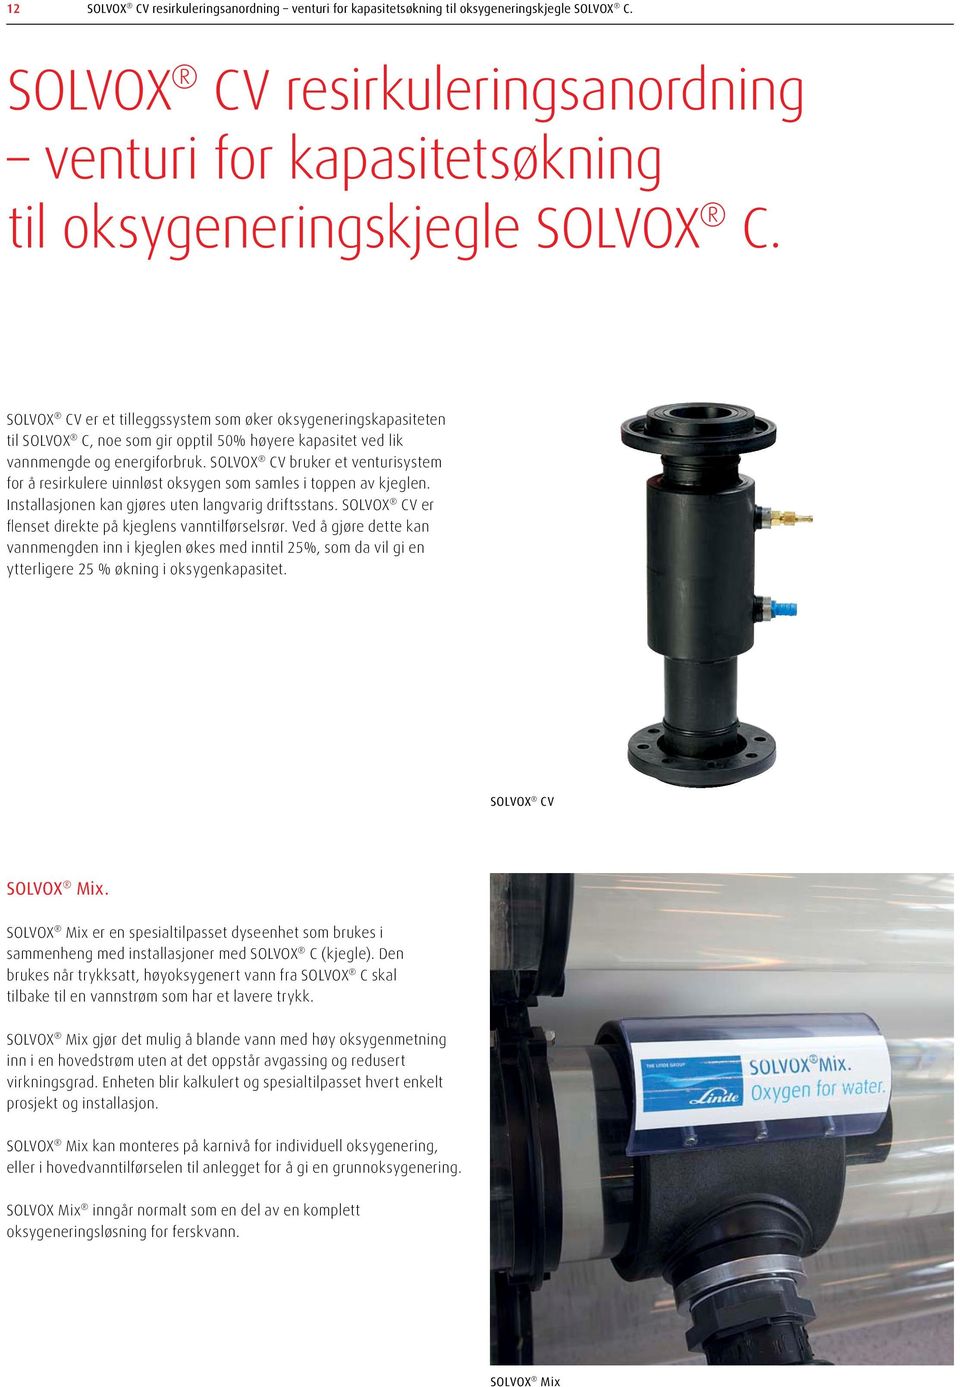 SOLVOX CV er et tilleggssystem som øker oksygeneringskapasiteten til SOLVOX C, noe som gir opptil 50 % høyere kapasitet ved lik vannmengde og energiforbruk.